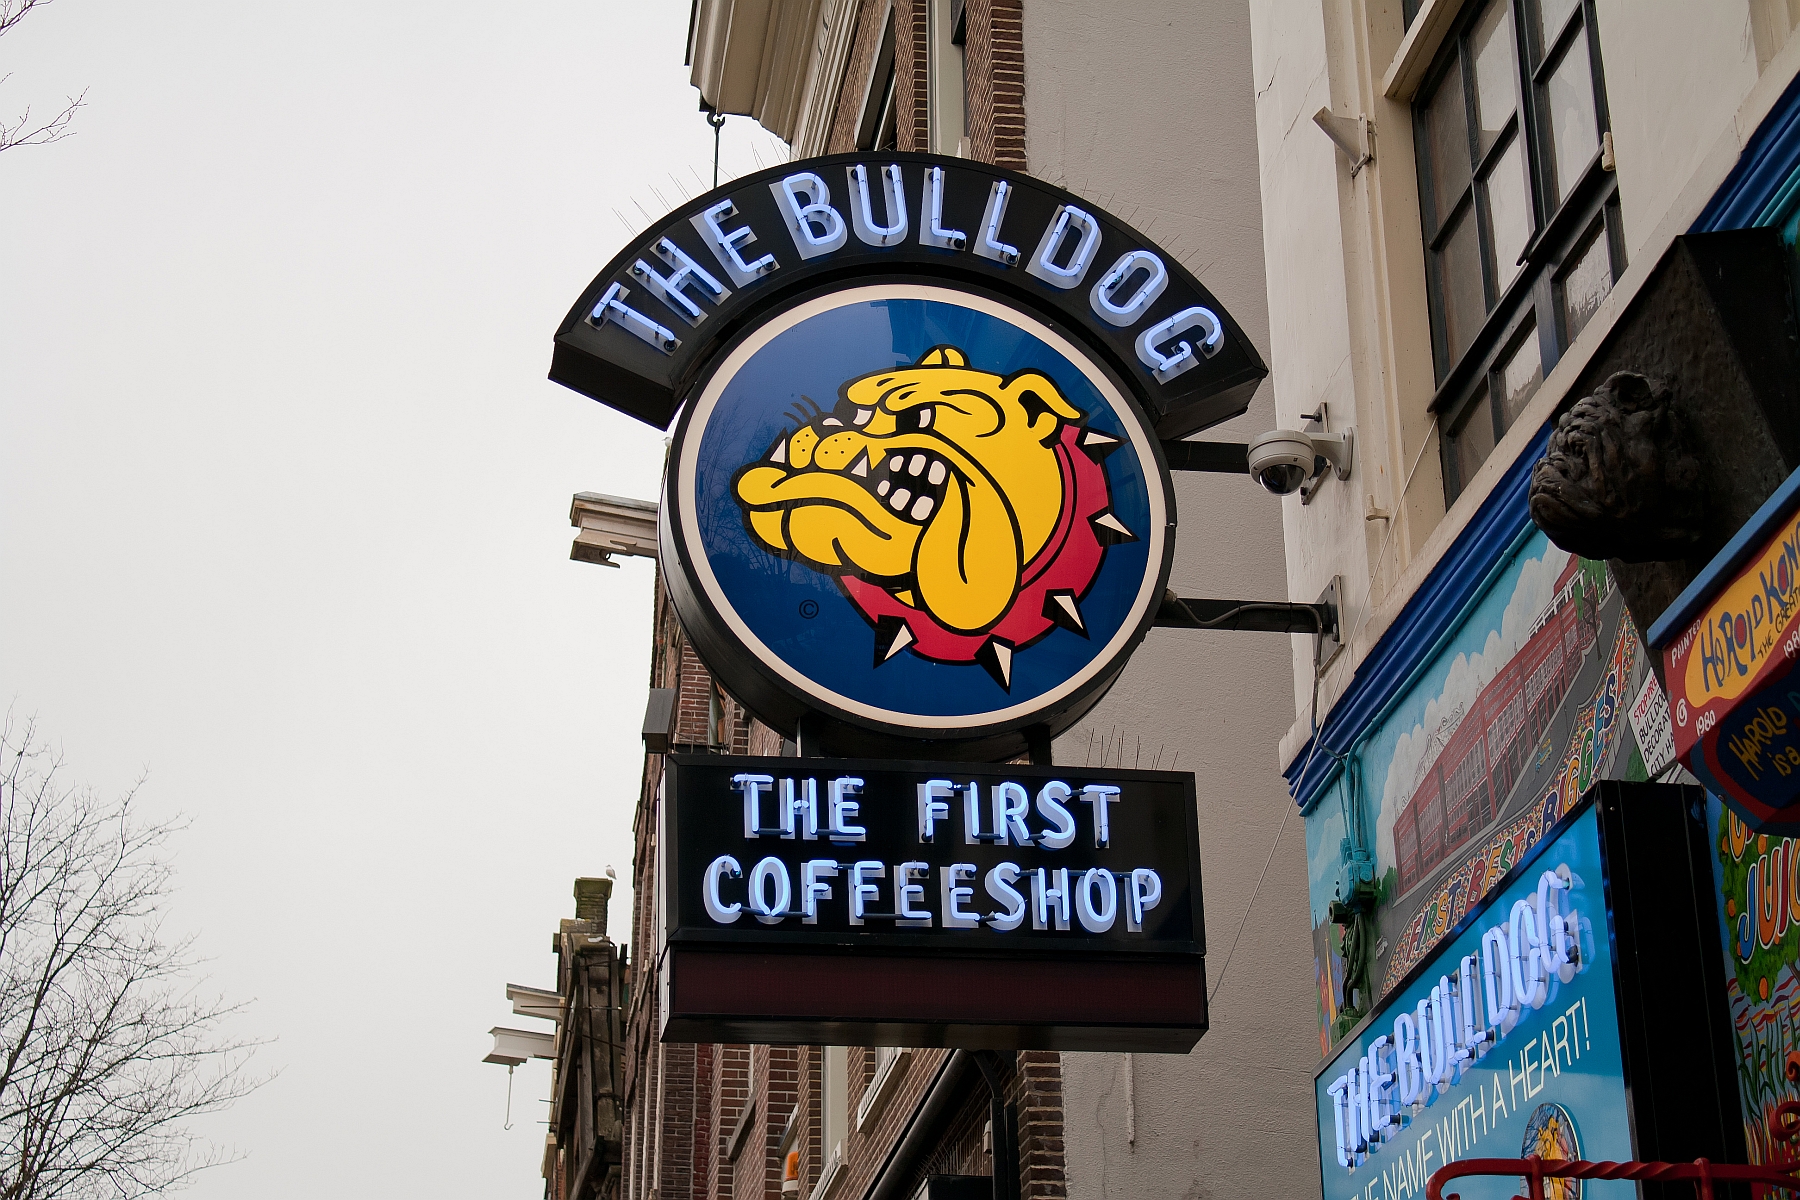 De bekendste coffeeshop van Amsterdam moet waarschijnlijk ook verhuizen.